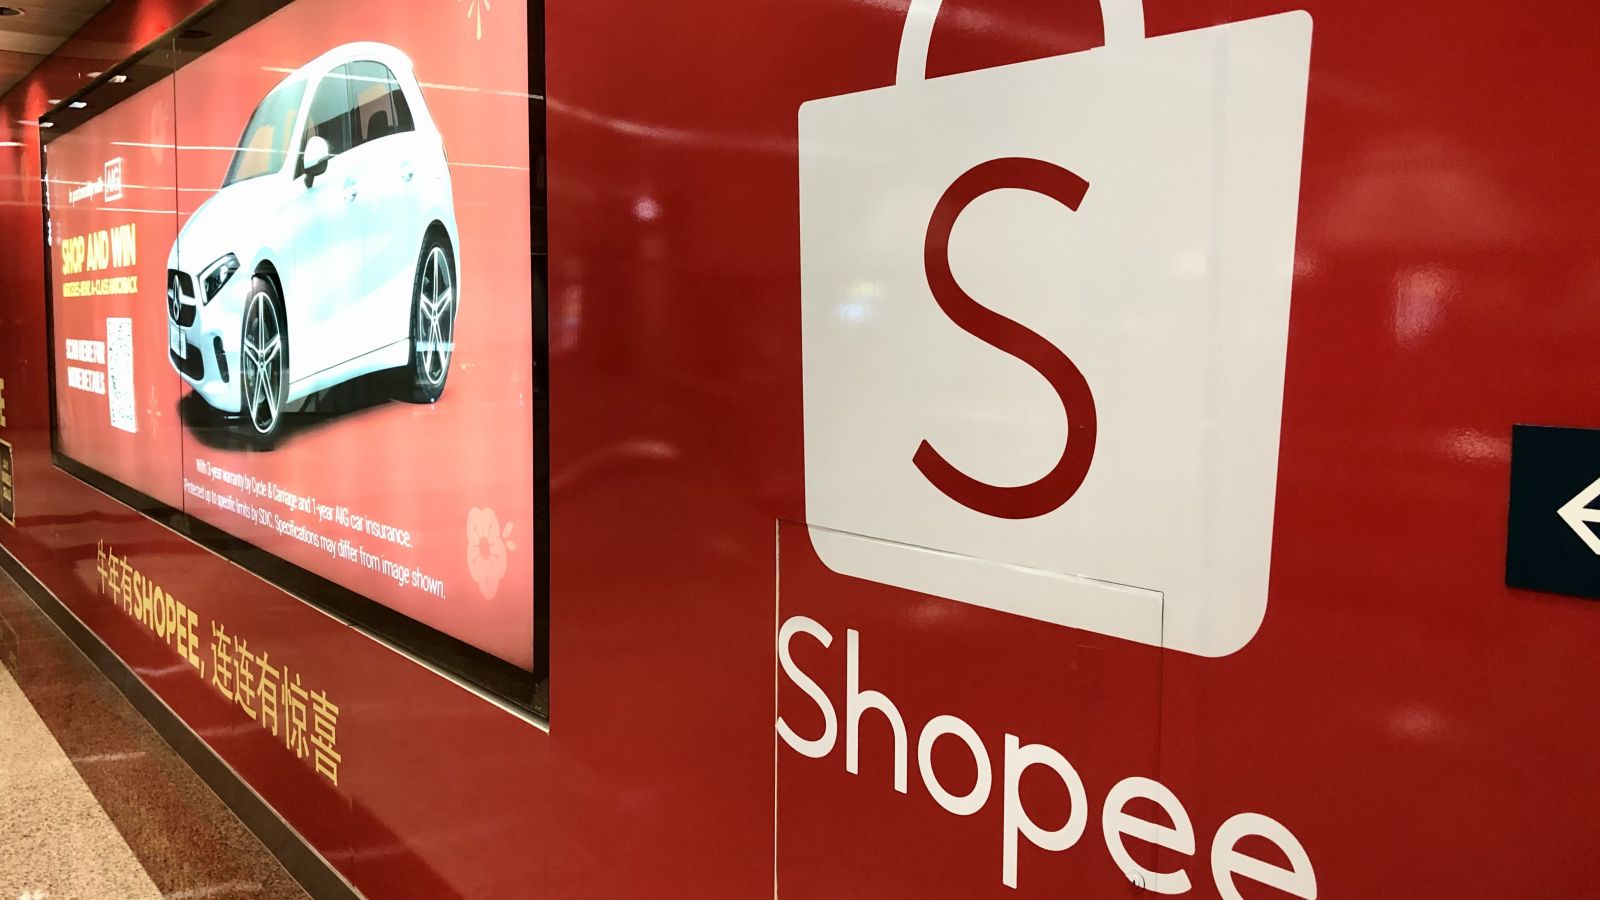 Shopee đã phát triển nhanh chóng trong thời kỳ đại dịch, trở thành trang mua sắm trực tuyến được truy cập nhiều nhất ở Singapore và các nước lân cận